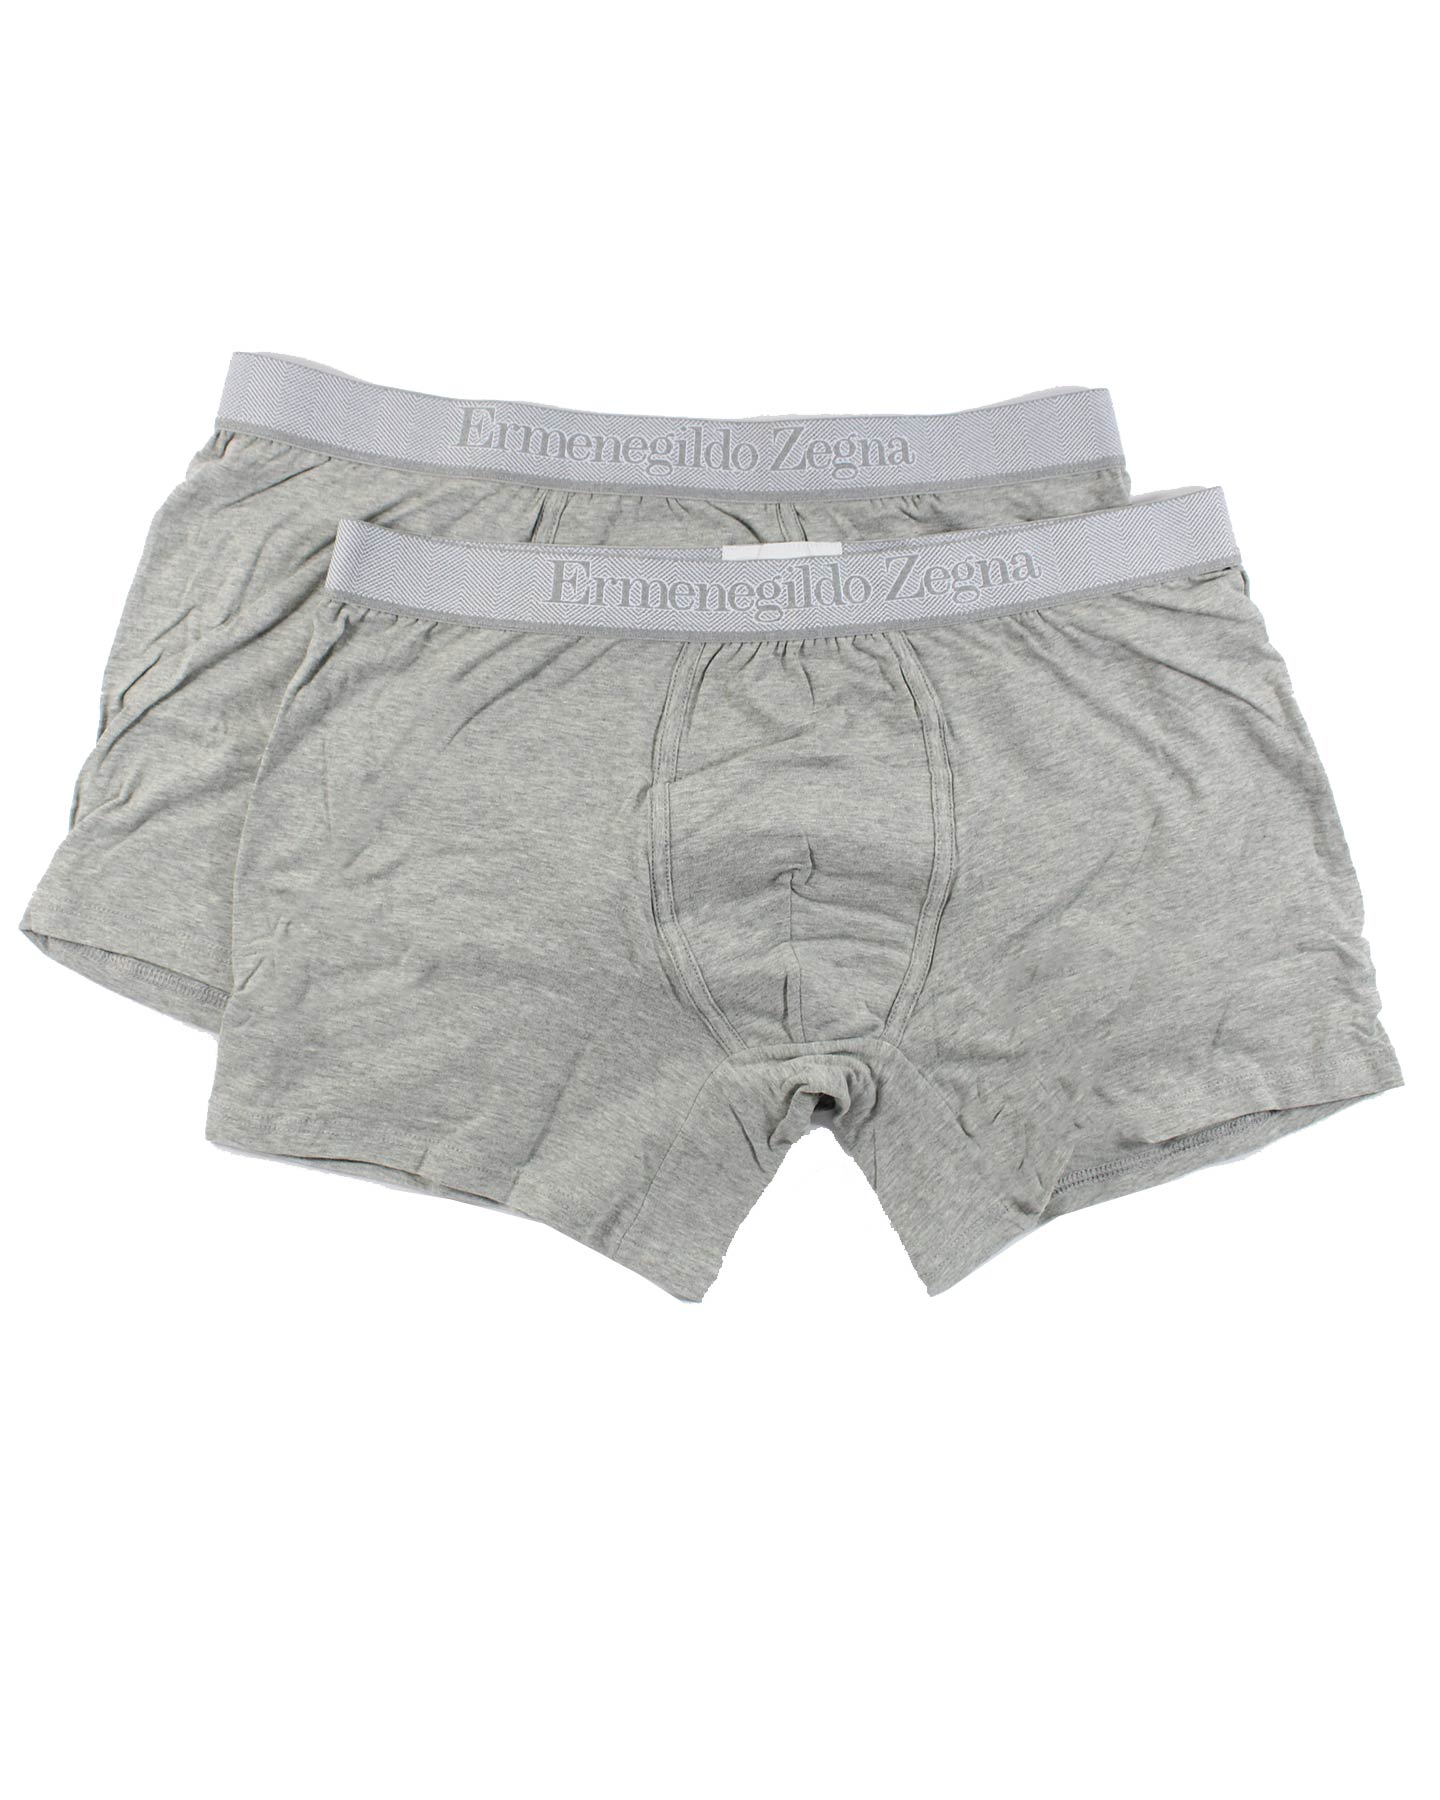 Ermenegildo Zegna Boxer Briefs Gray Men Underwear 2 Pack Stretch Cotton S